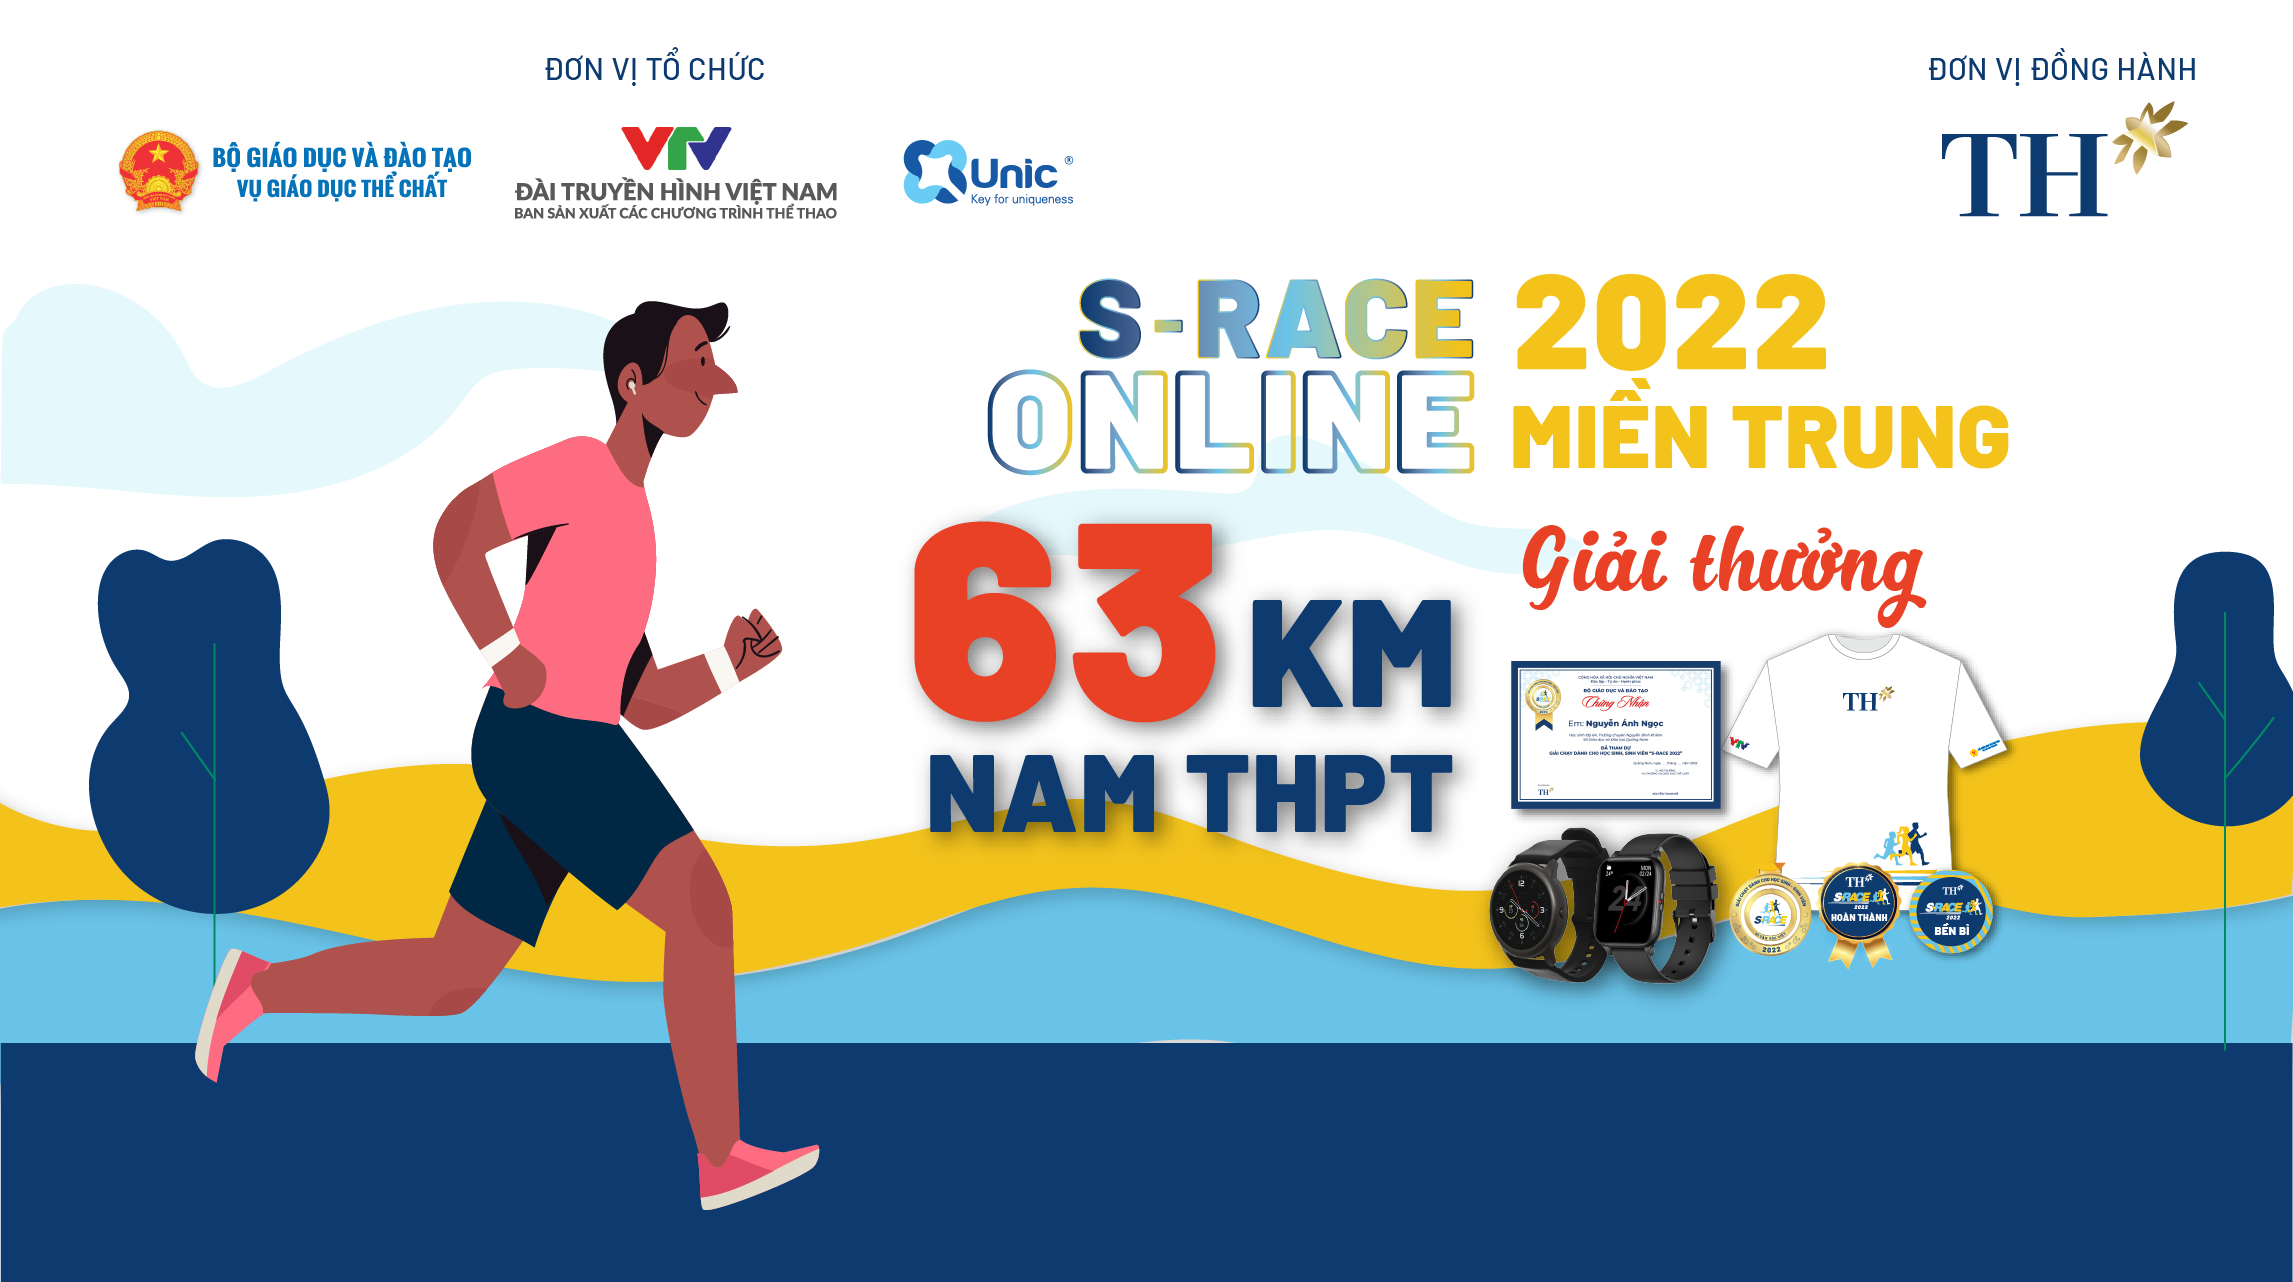 63 KM NAM THPT (S-Race Online miền Trung) - Thử thách chạy bộ - Unlimited Chain